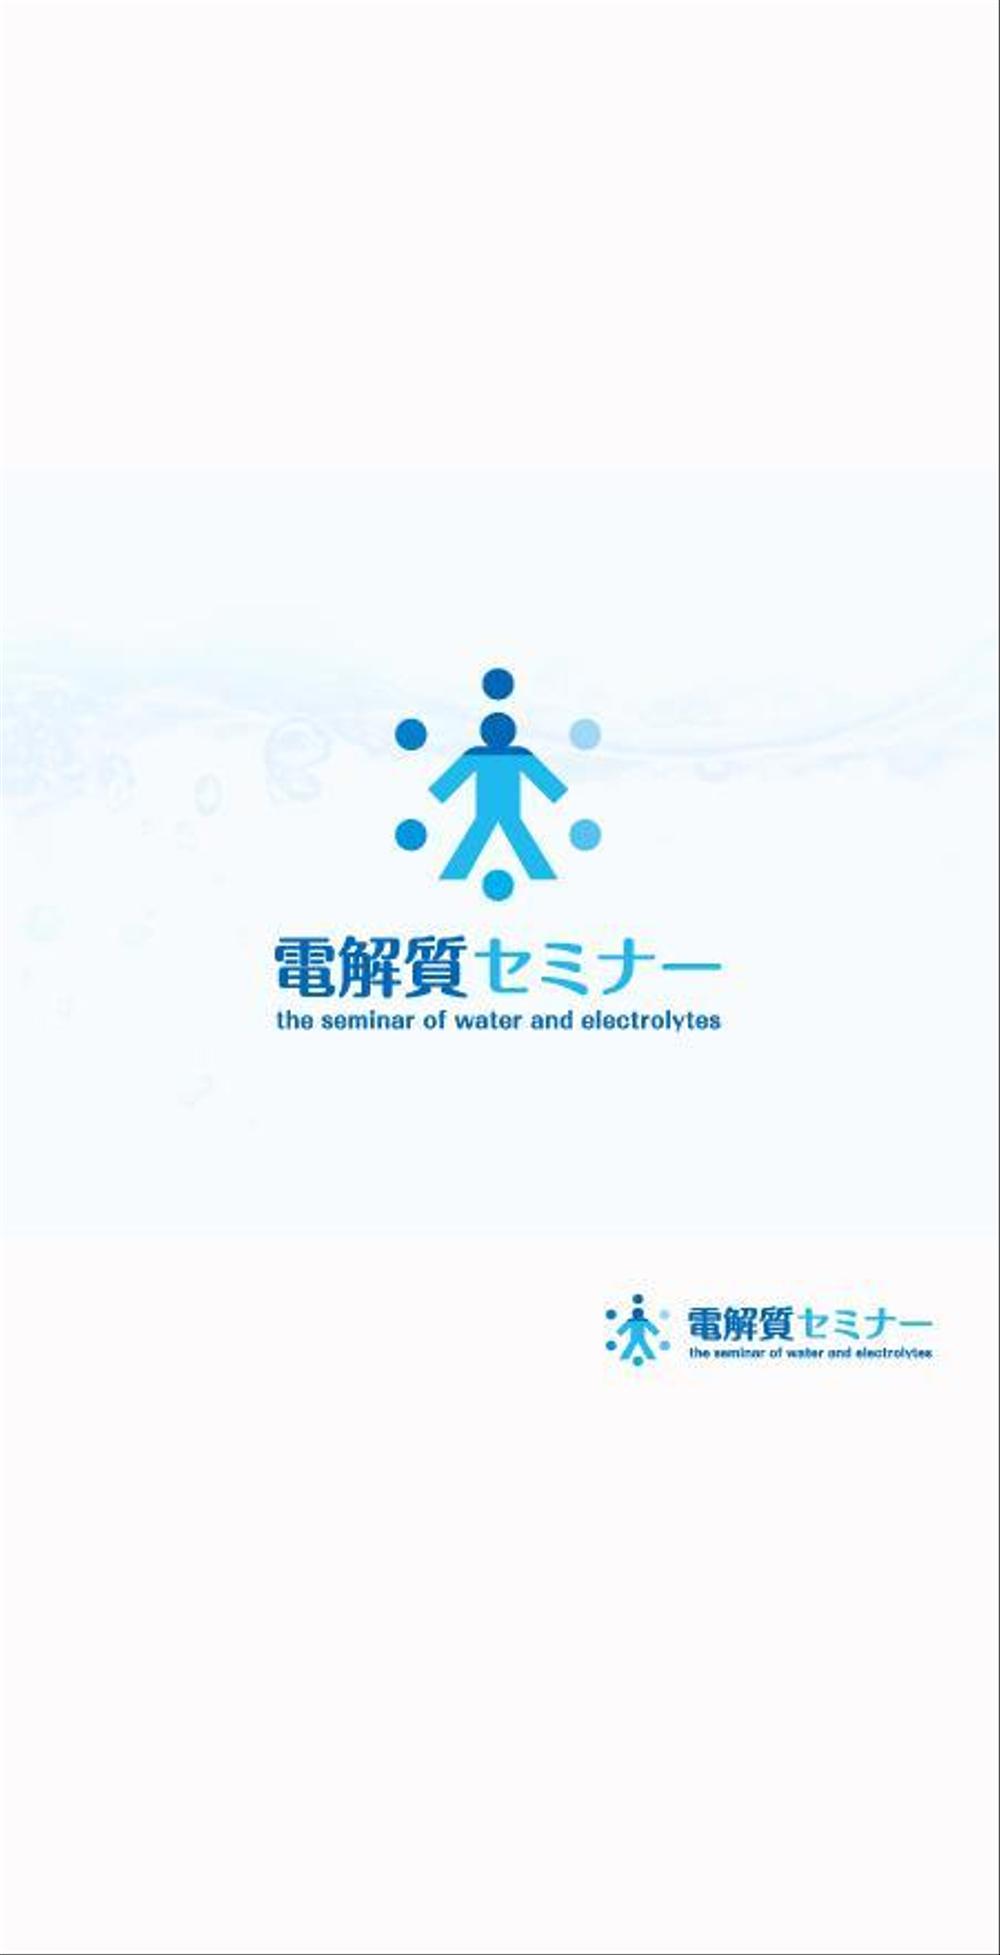 セミナー「電解質ウィンターセミナー」のロゴ